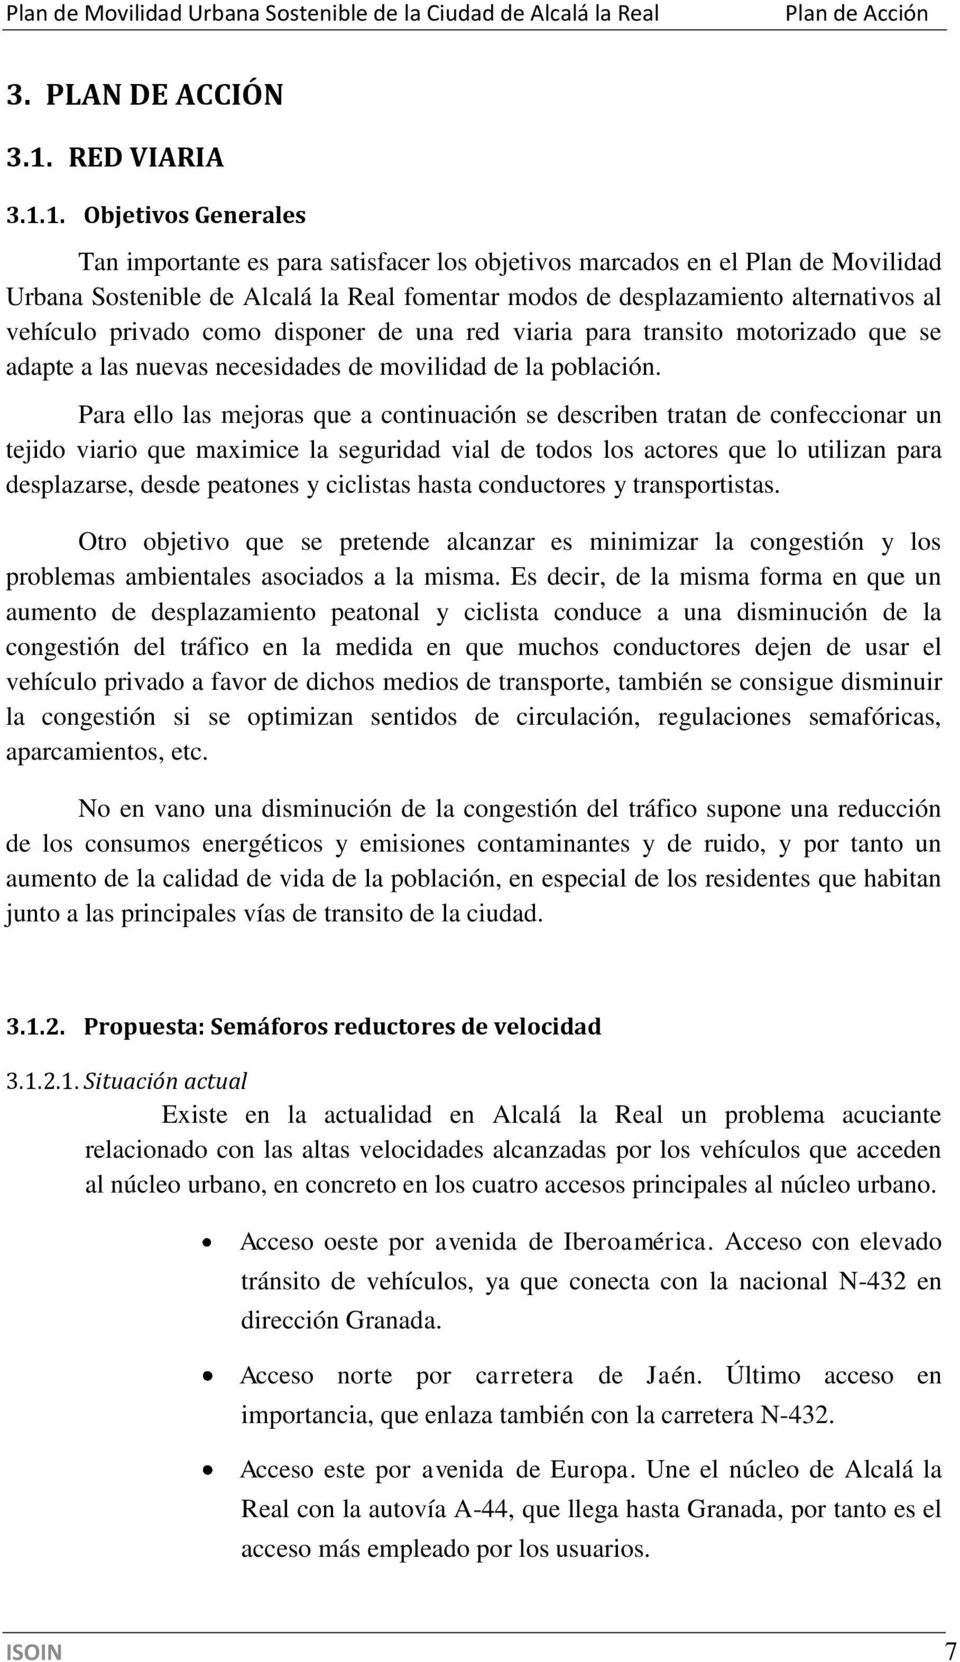 1. Objetivos Generales Tan importante es para satisfacer los objetivos marcados en el Plan de Movilidad Urbana Sostenible de Alcalá la Real fomentar modos de desplazamiento alternativos al vehículo